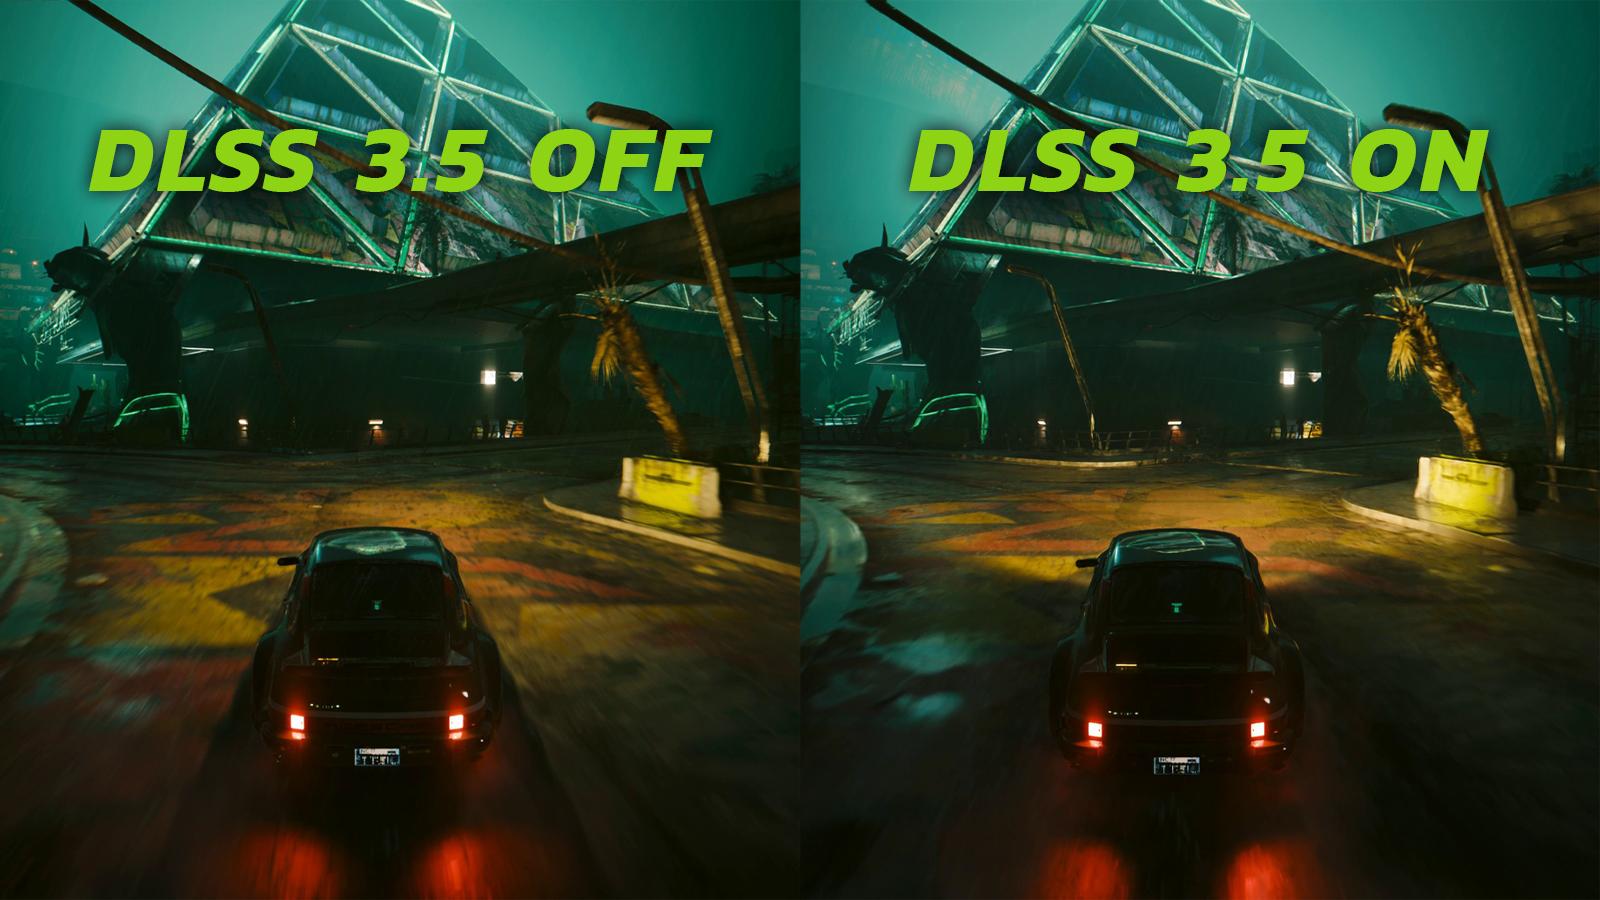 DLSS 3.5 comparison